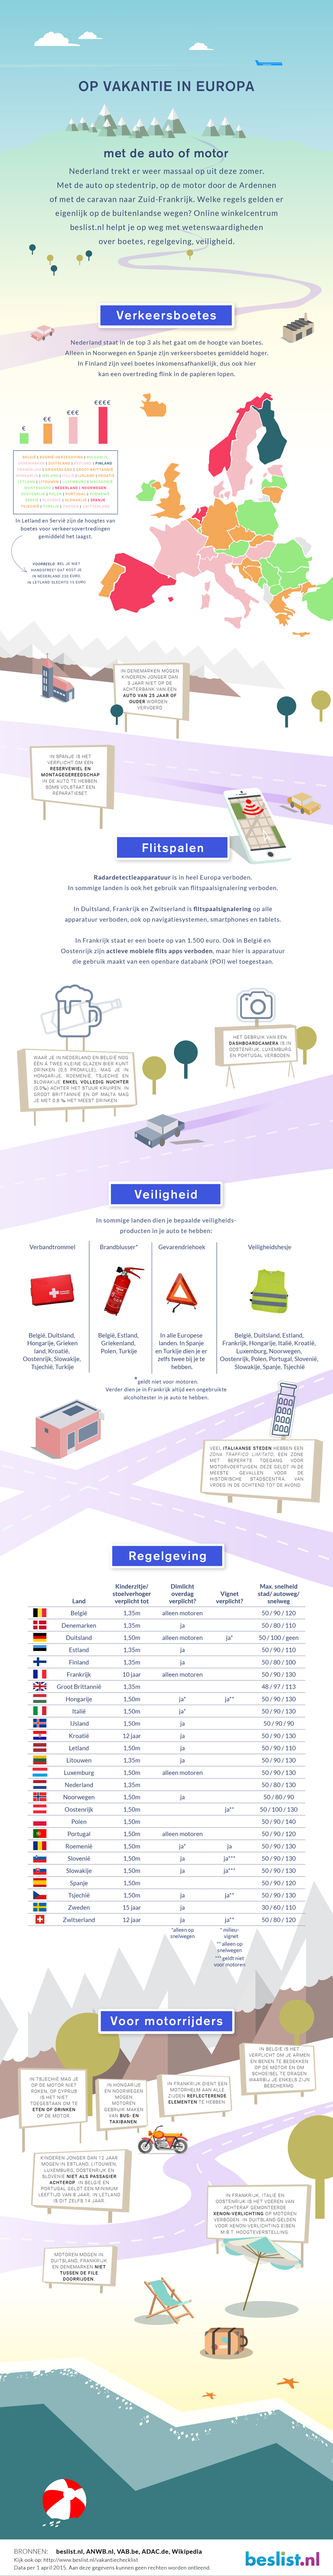 Verkeersregels infographic